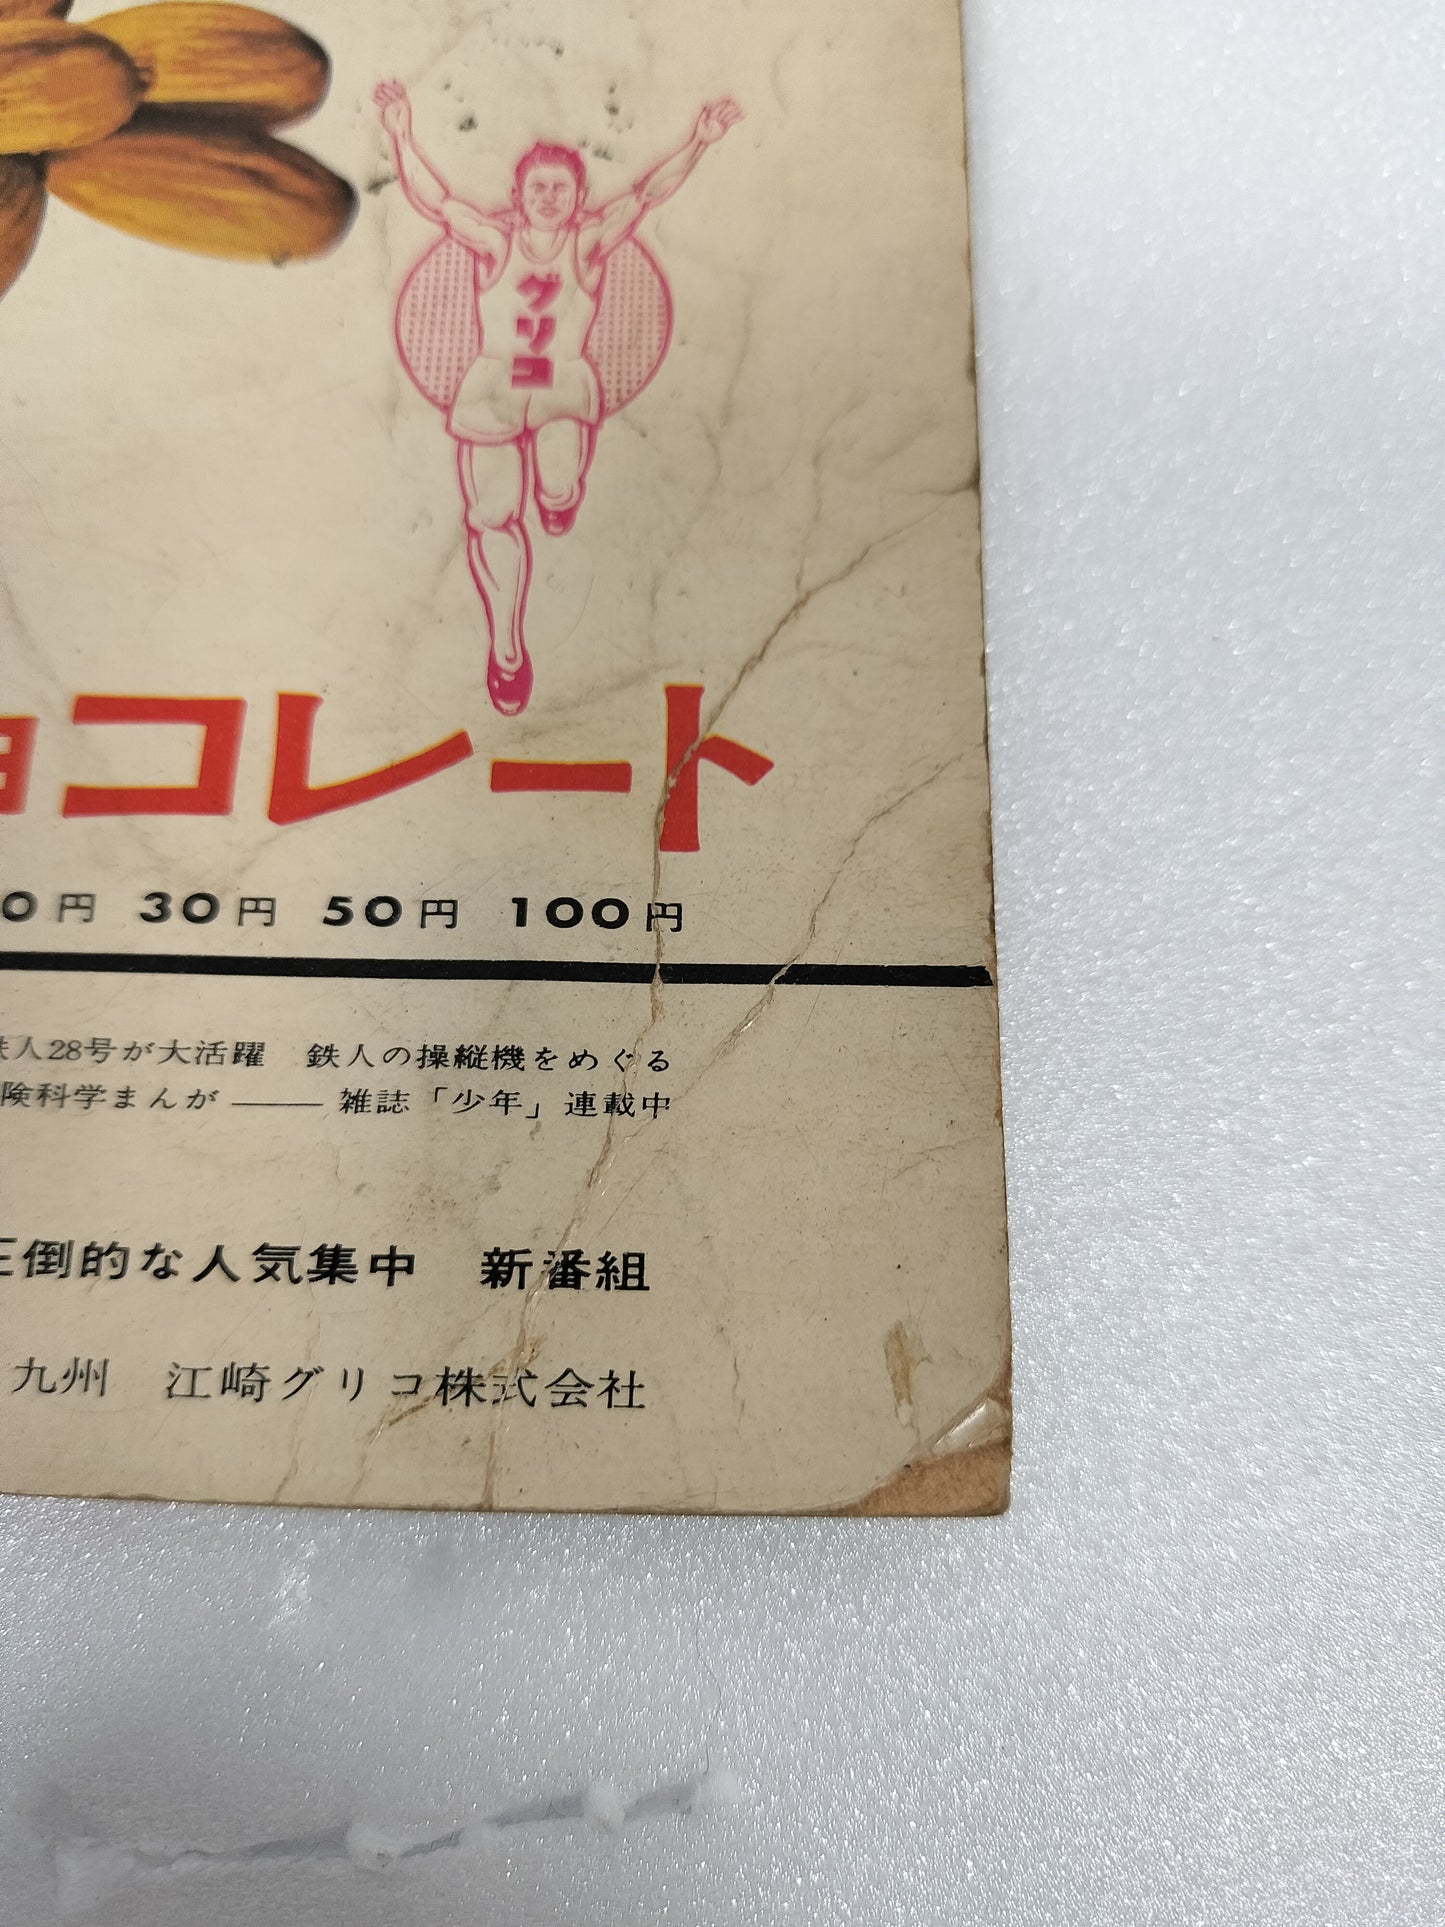 Tetsujin 28-go Tetsujin 28-go no Uta Song Susumu Shotaro Glico Almond Chocolate Japanese TV Manga Anime Sonosheet Flexi disc vintage